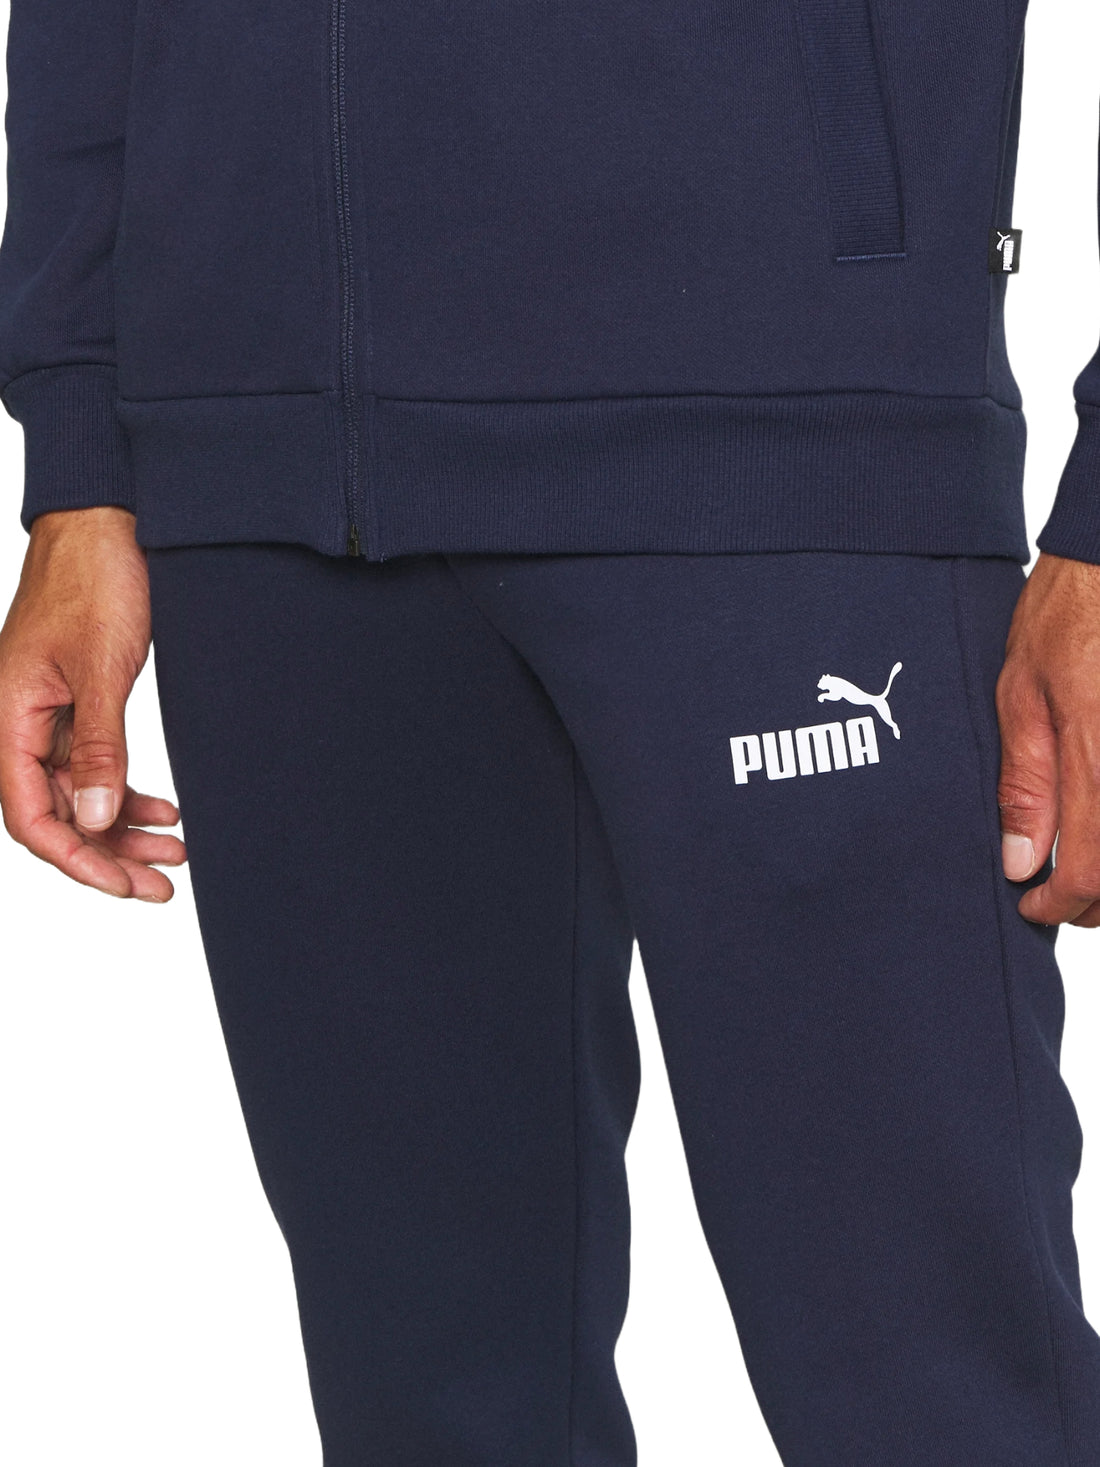 Tute Blu Puma